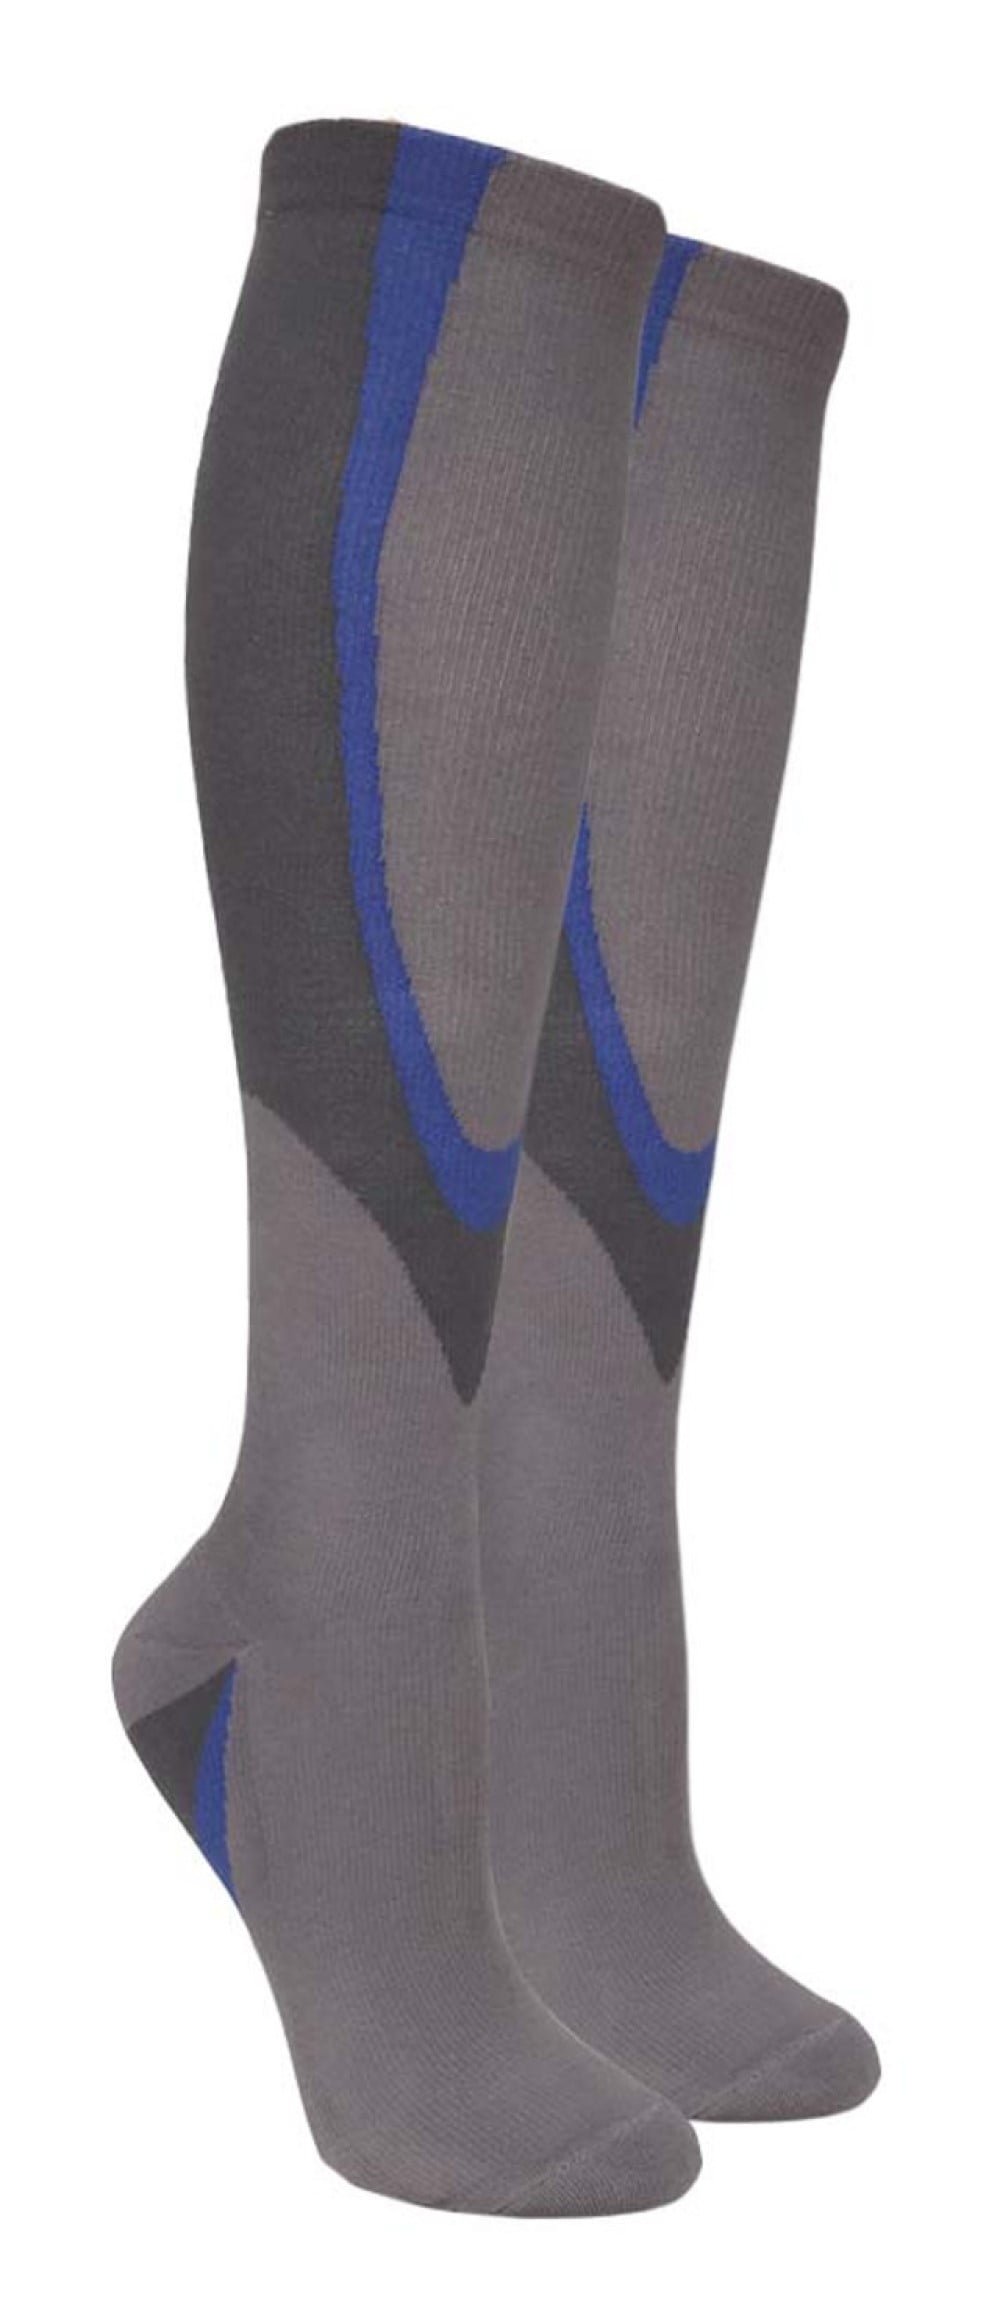 Allday Compression Socks for Women – CVR Compression Care